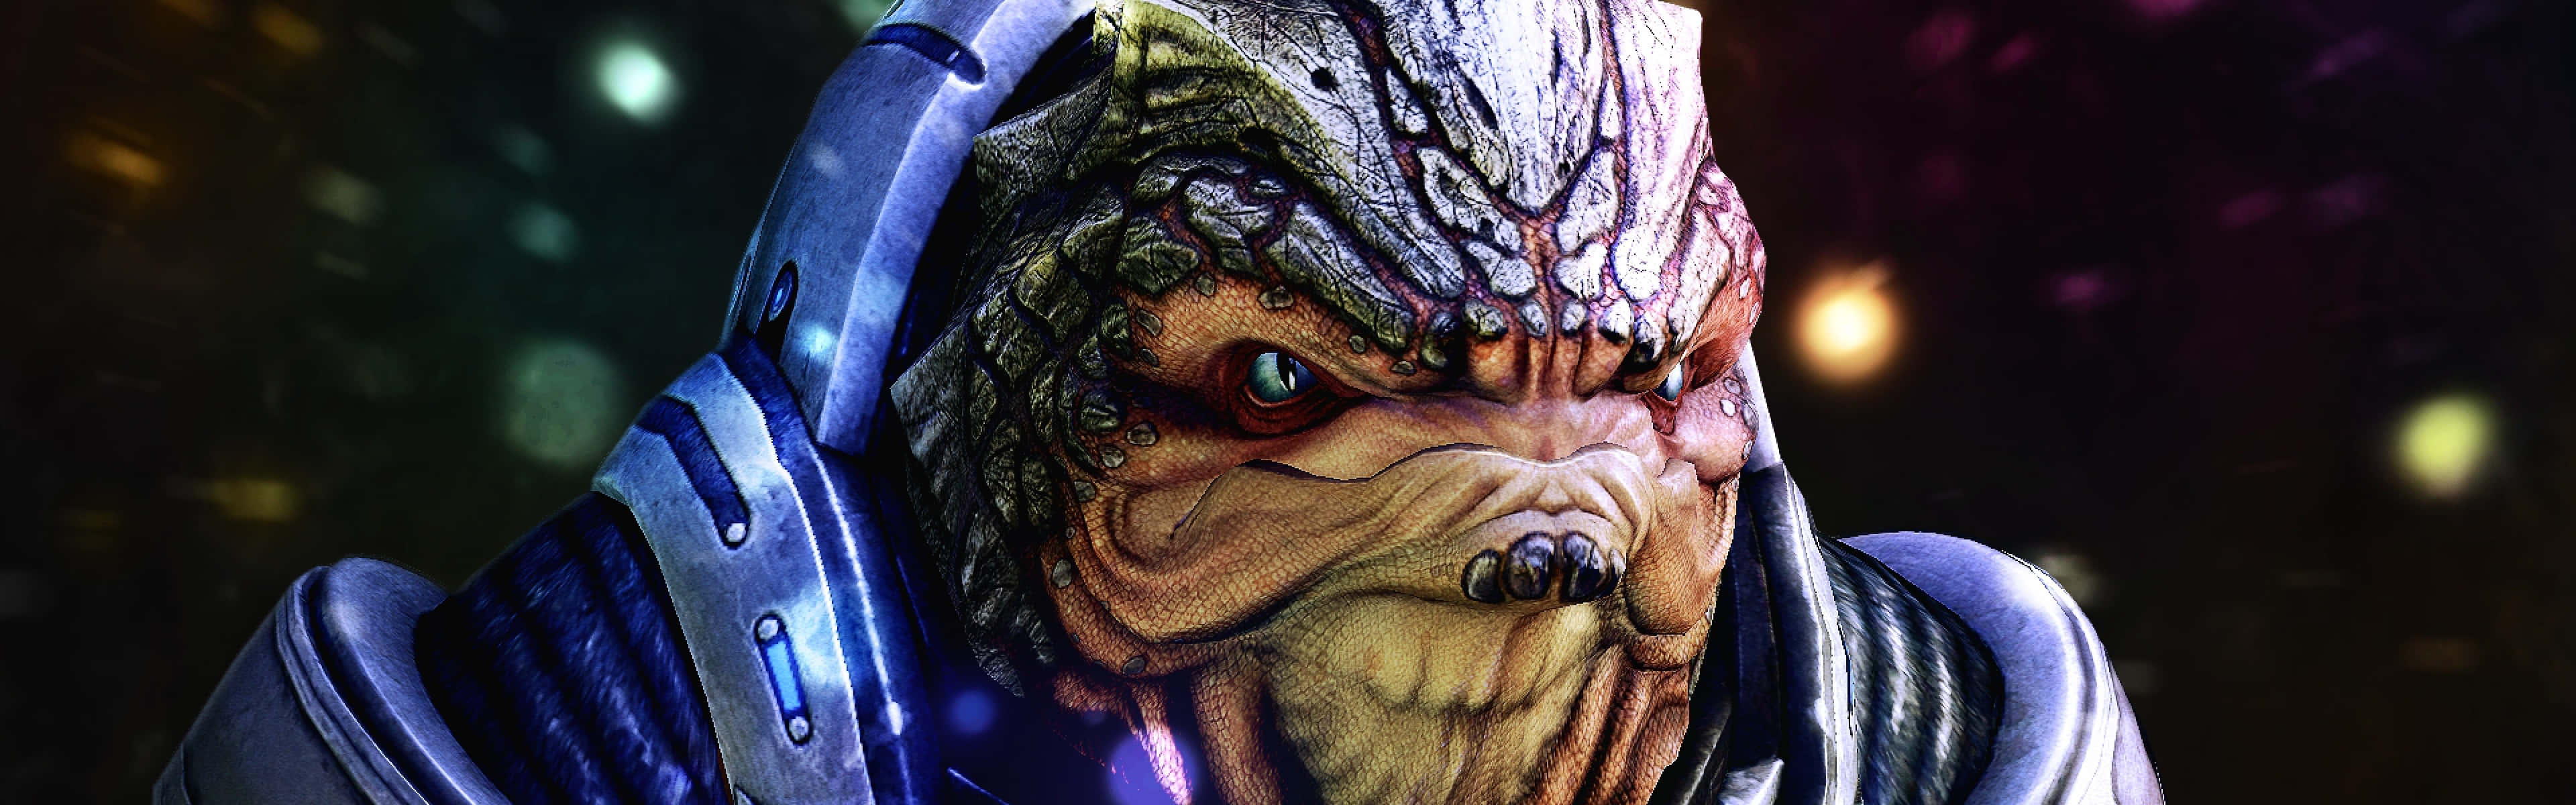 Mass Effect Grunt: Ferocious and Strong Wallpaper